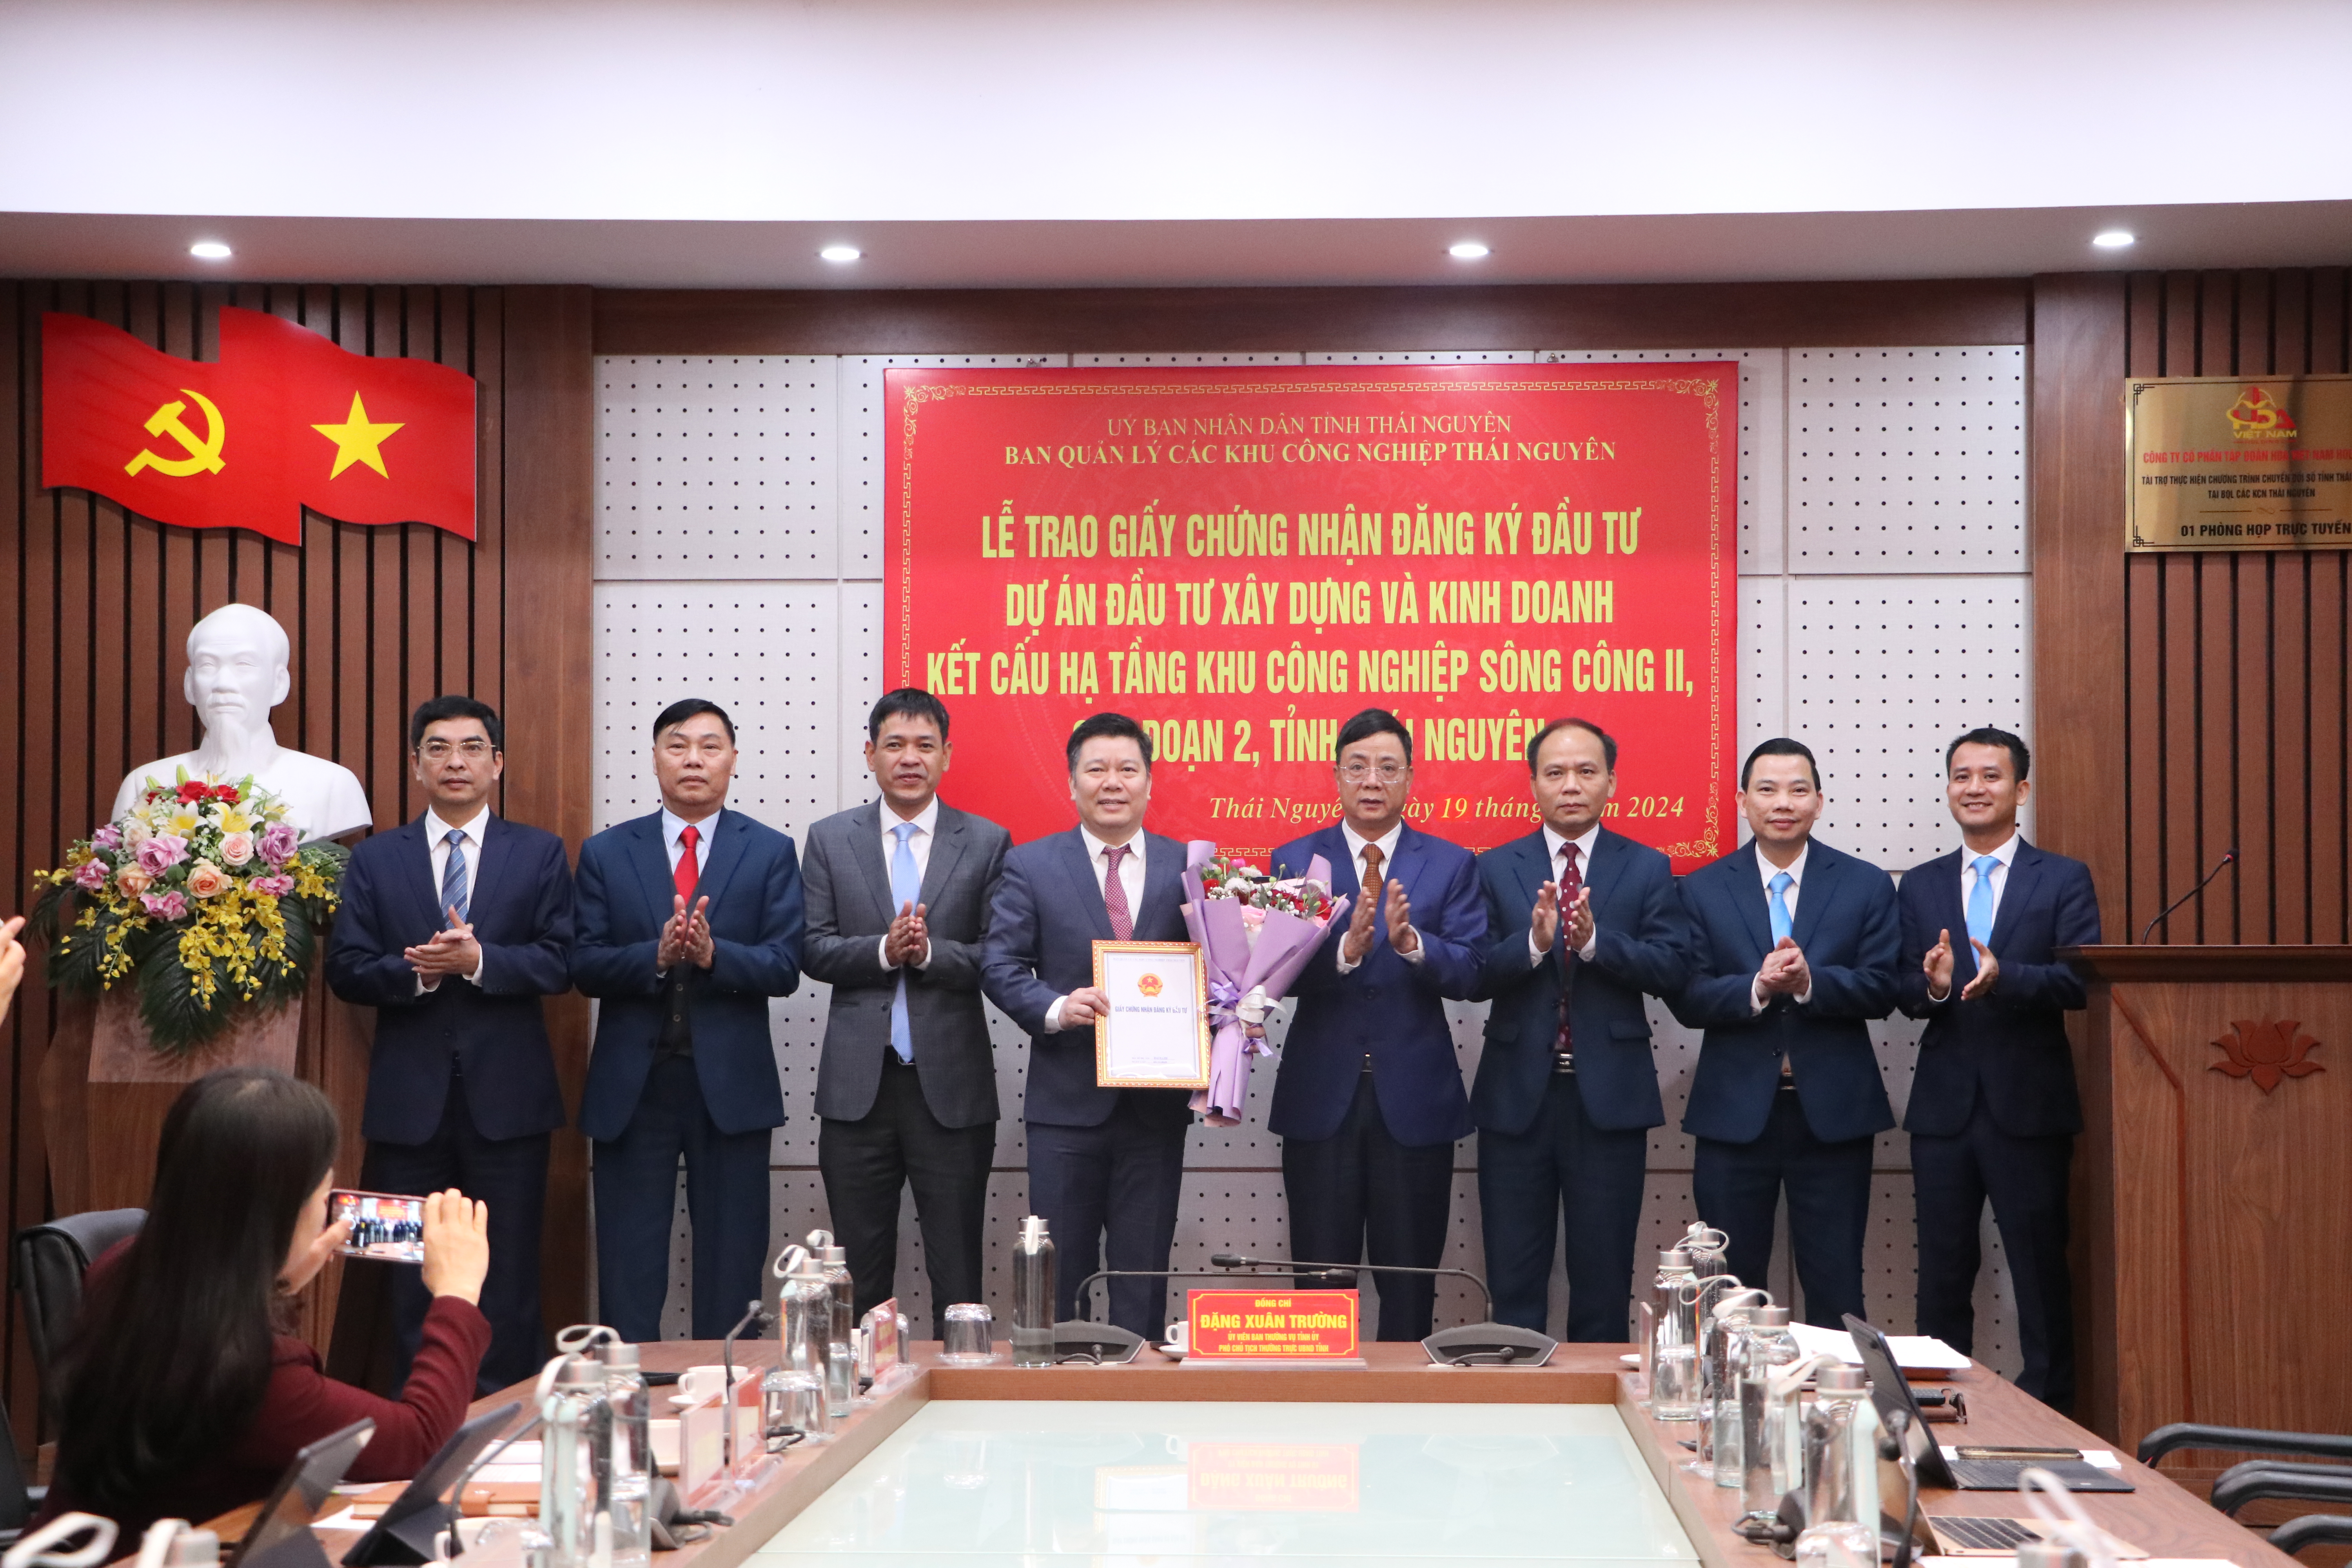 Lễ trao Giấy Chứng nhận Đăng ký đầu tư Dự án đầu tư xây dựng và kinh doanh kết cấu hạ tầng KCN Sông Công II, giai đoạn 2, tỉnh Thái Nguyên